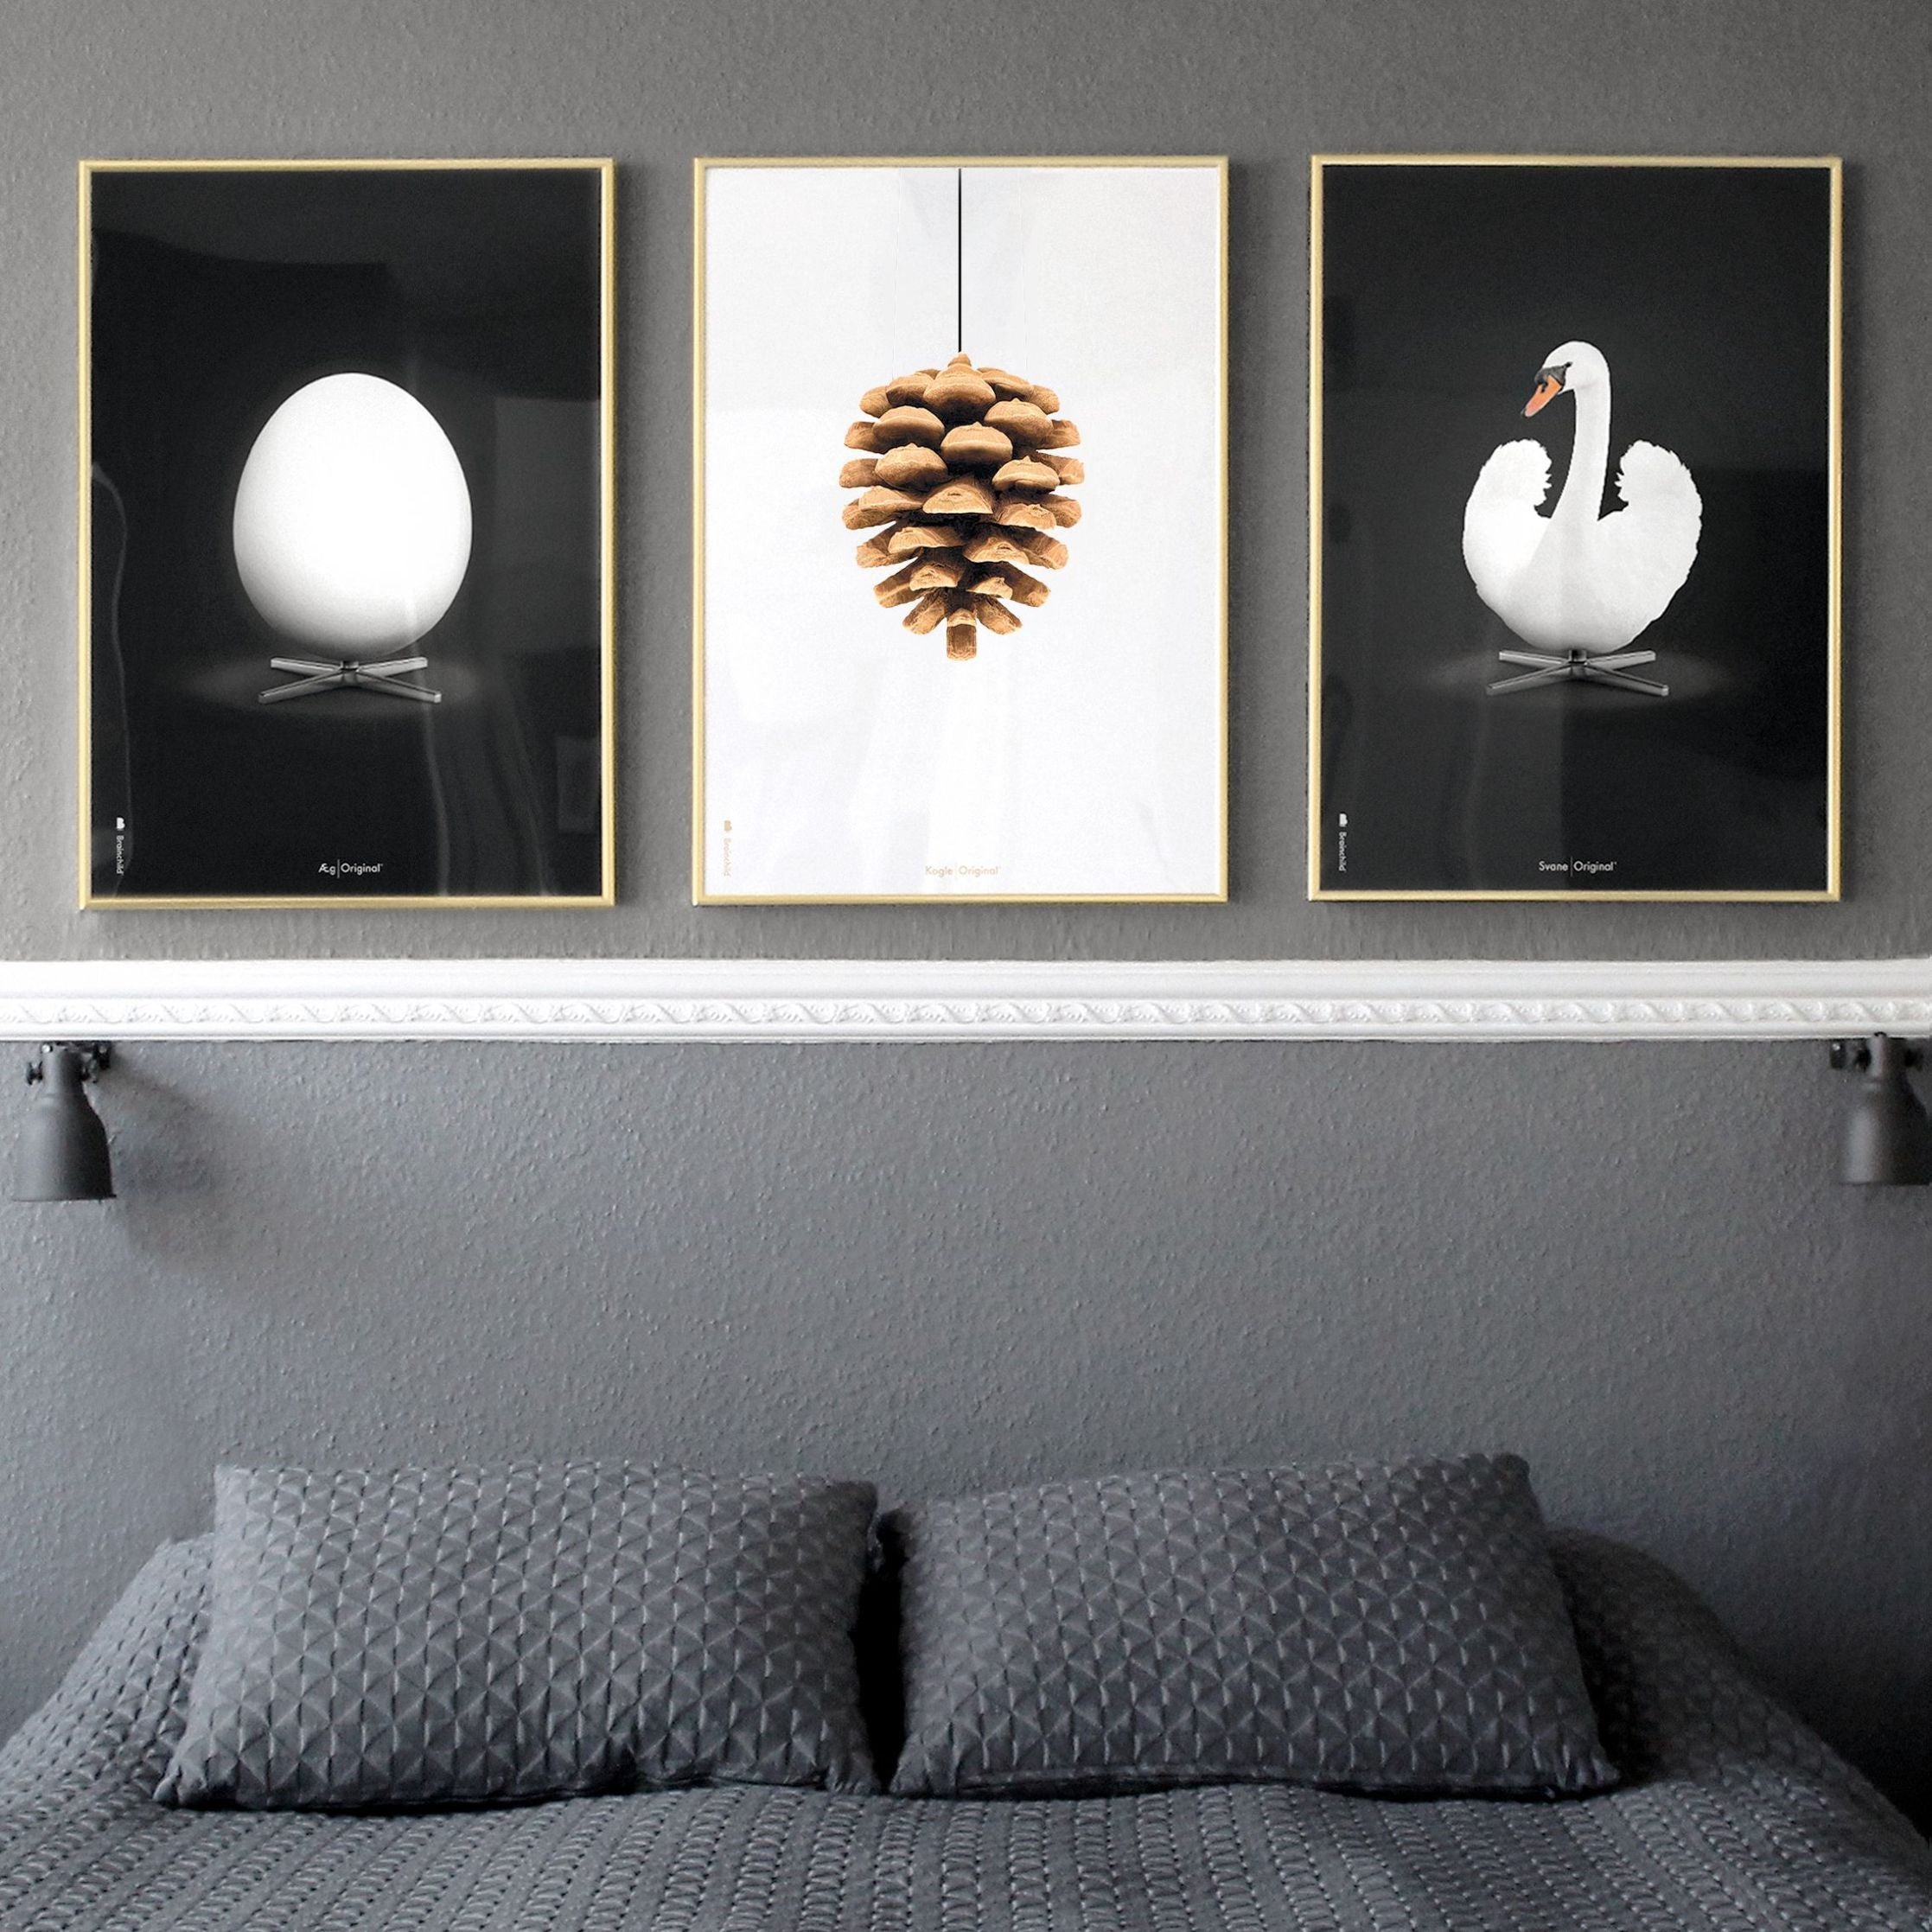 Brainchild Affiche classique du cône en pin, cadre en bois clair 30x40 cm, fond blanc